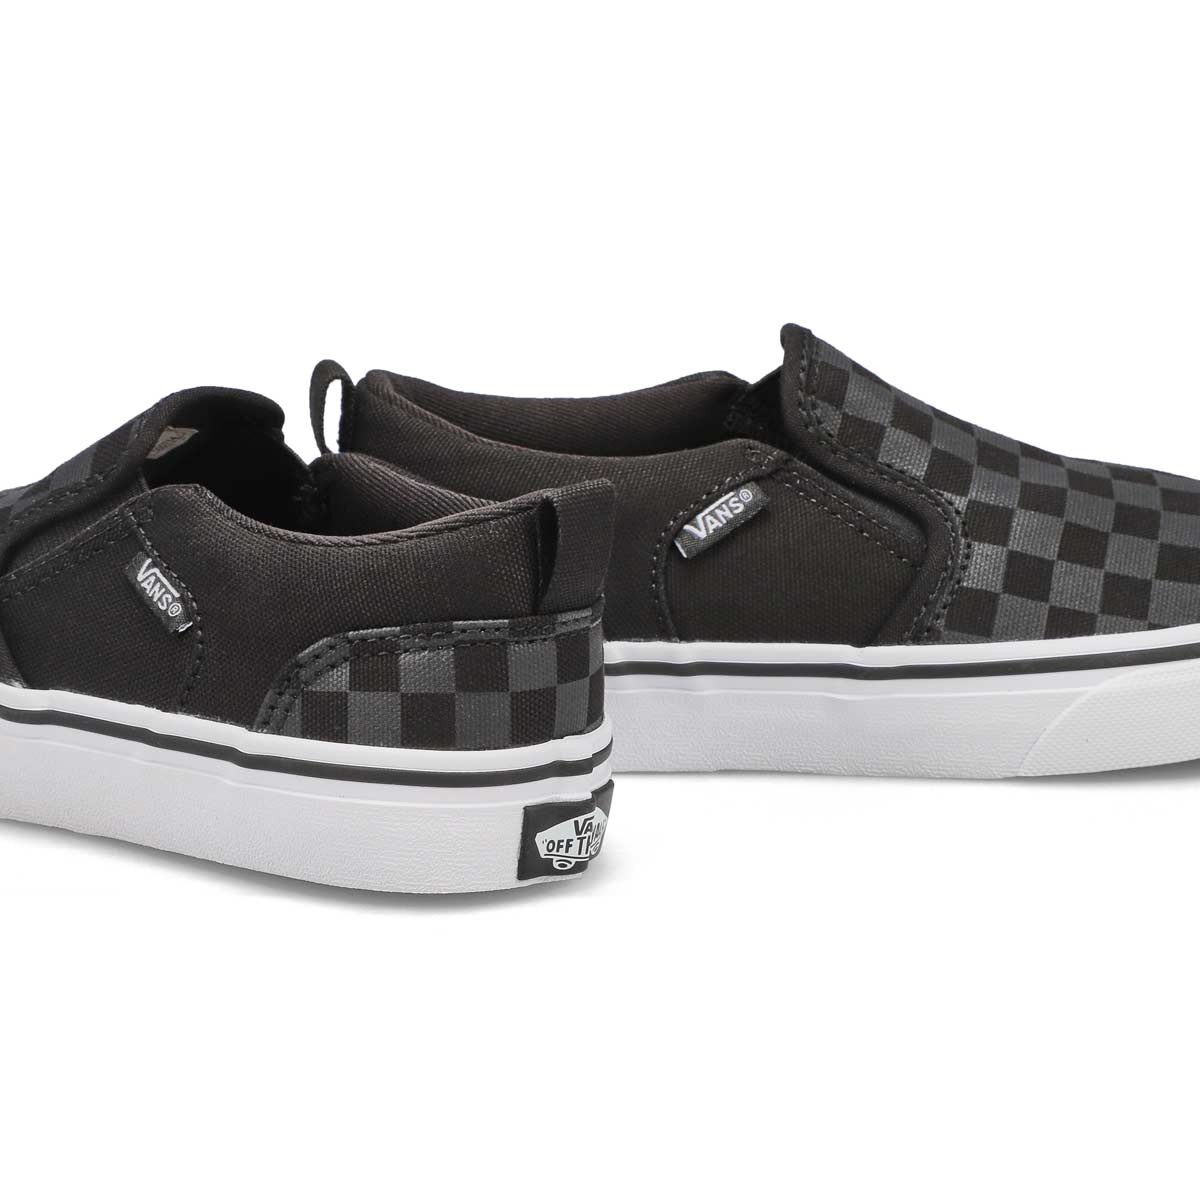 Boys' Asher Sneaker - Checkered Black/Black